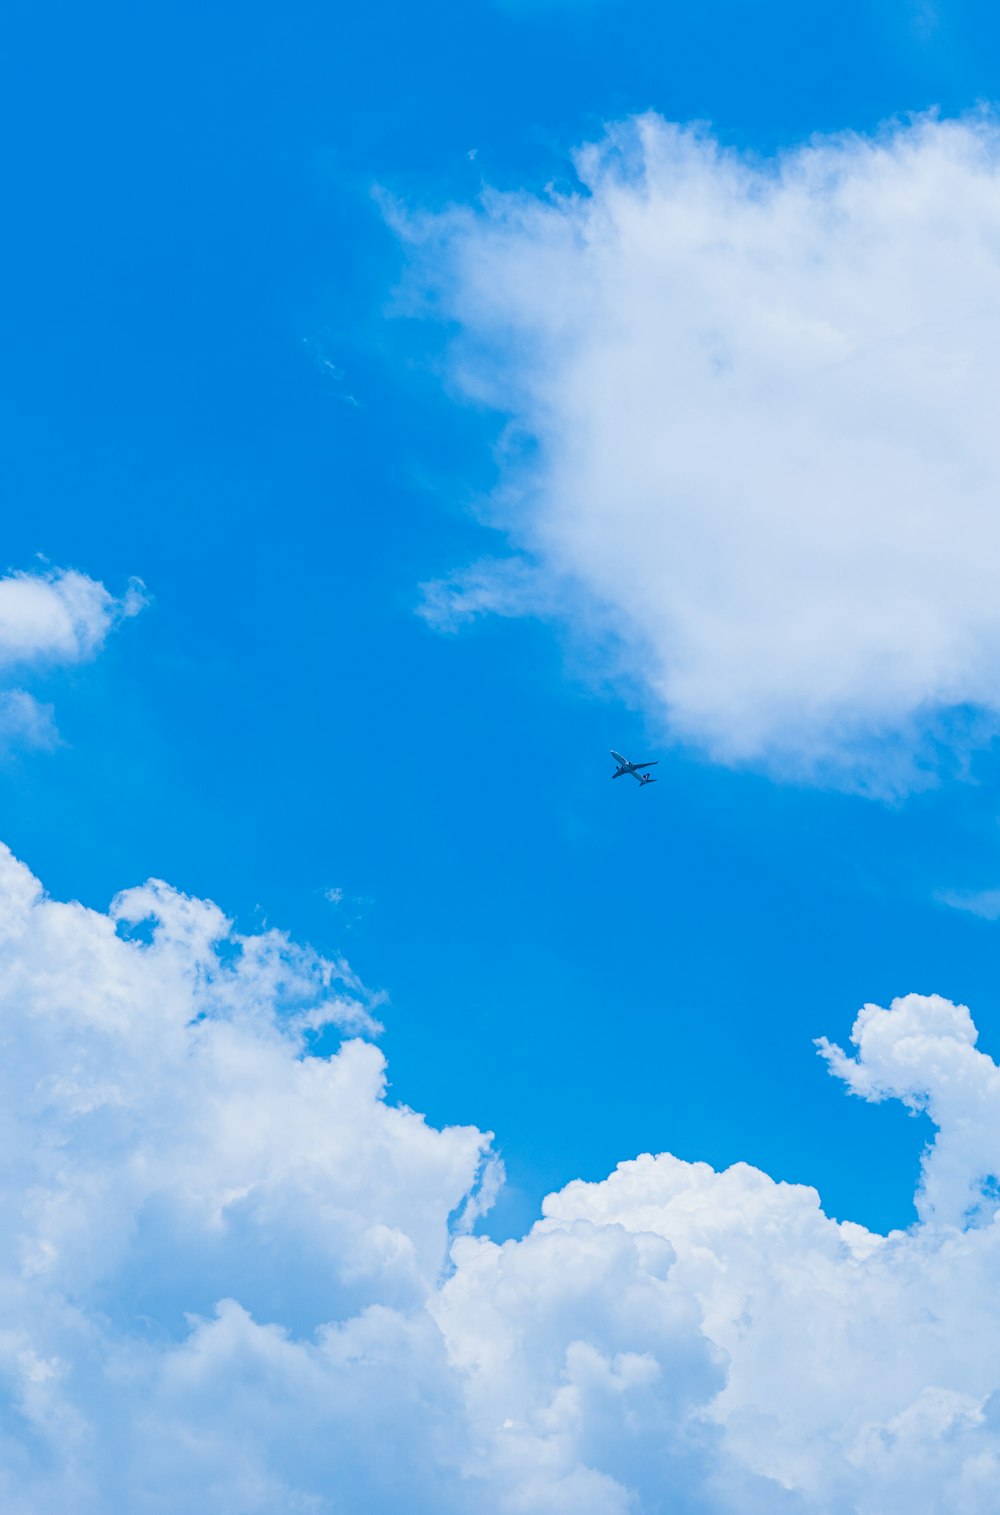 aeroplano a mezz'aria sotto cielo blu e nuvole bianche durante il giorno